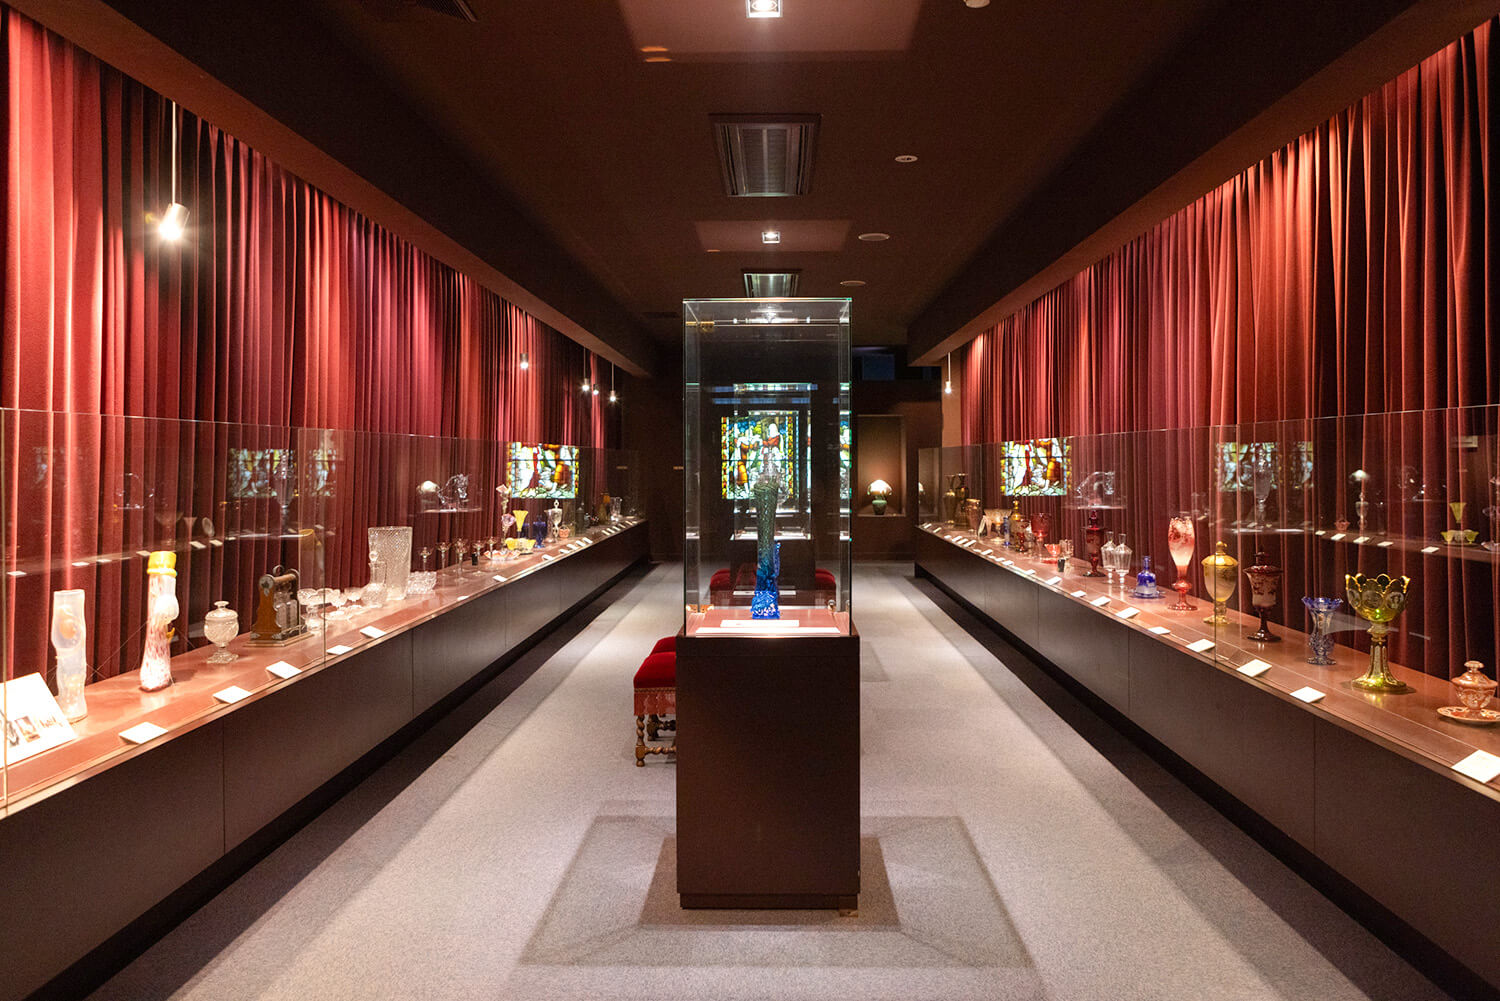 ガラス作品以外にも、陶芸家 酒井田柿右衛門の作品や古伊万里などの陶磁器もコレクションしている